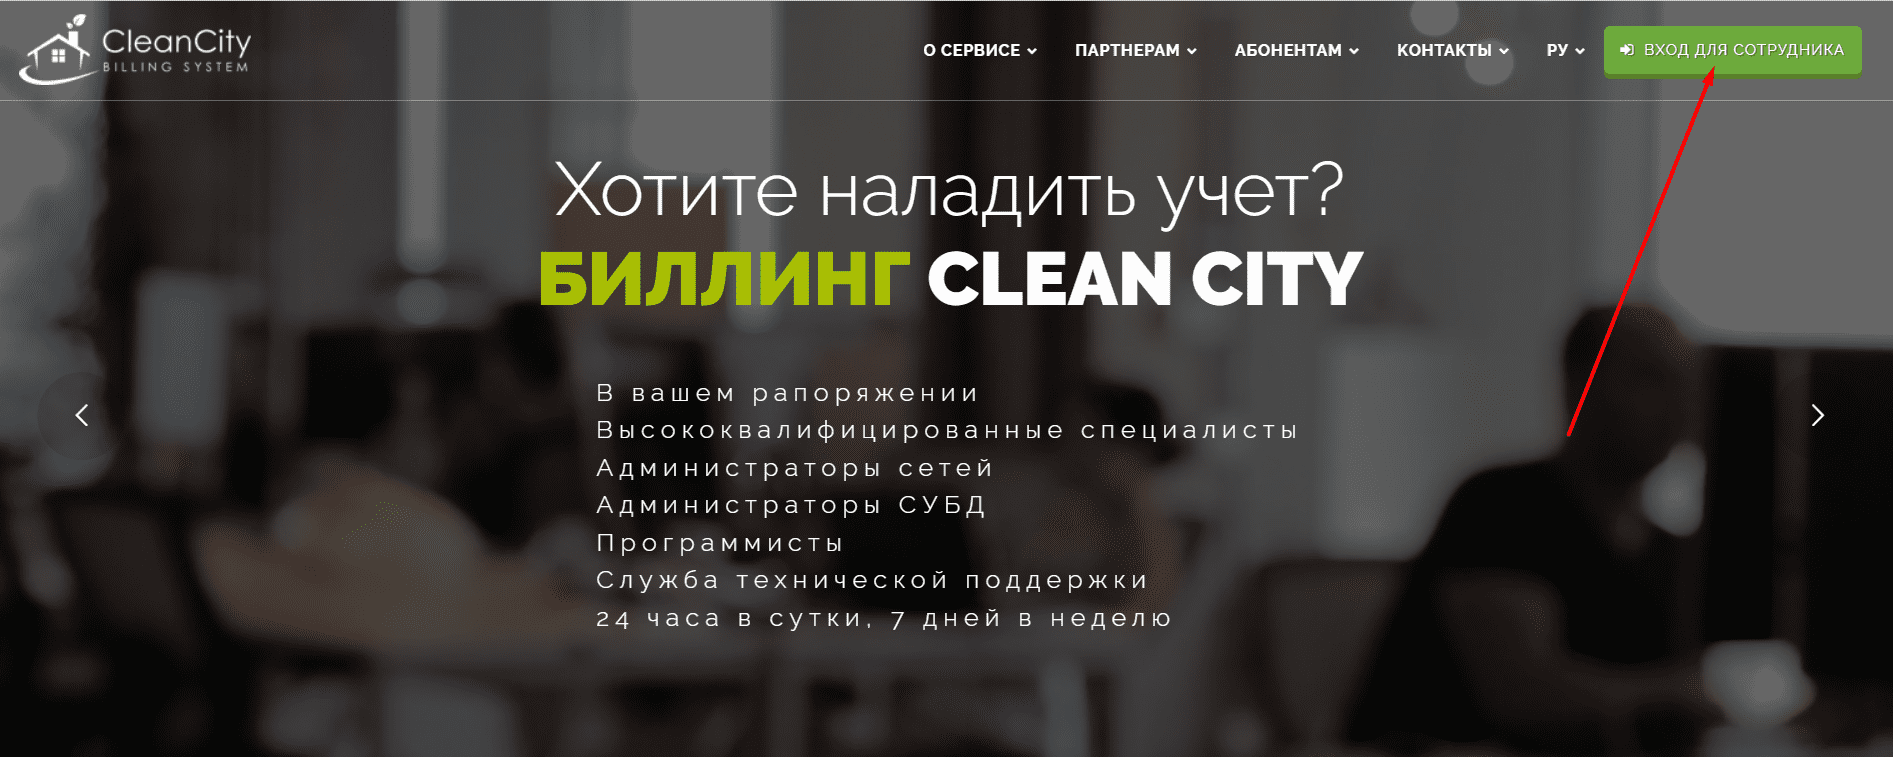 CleanCity.uz